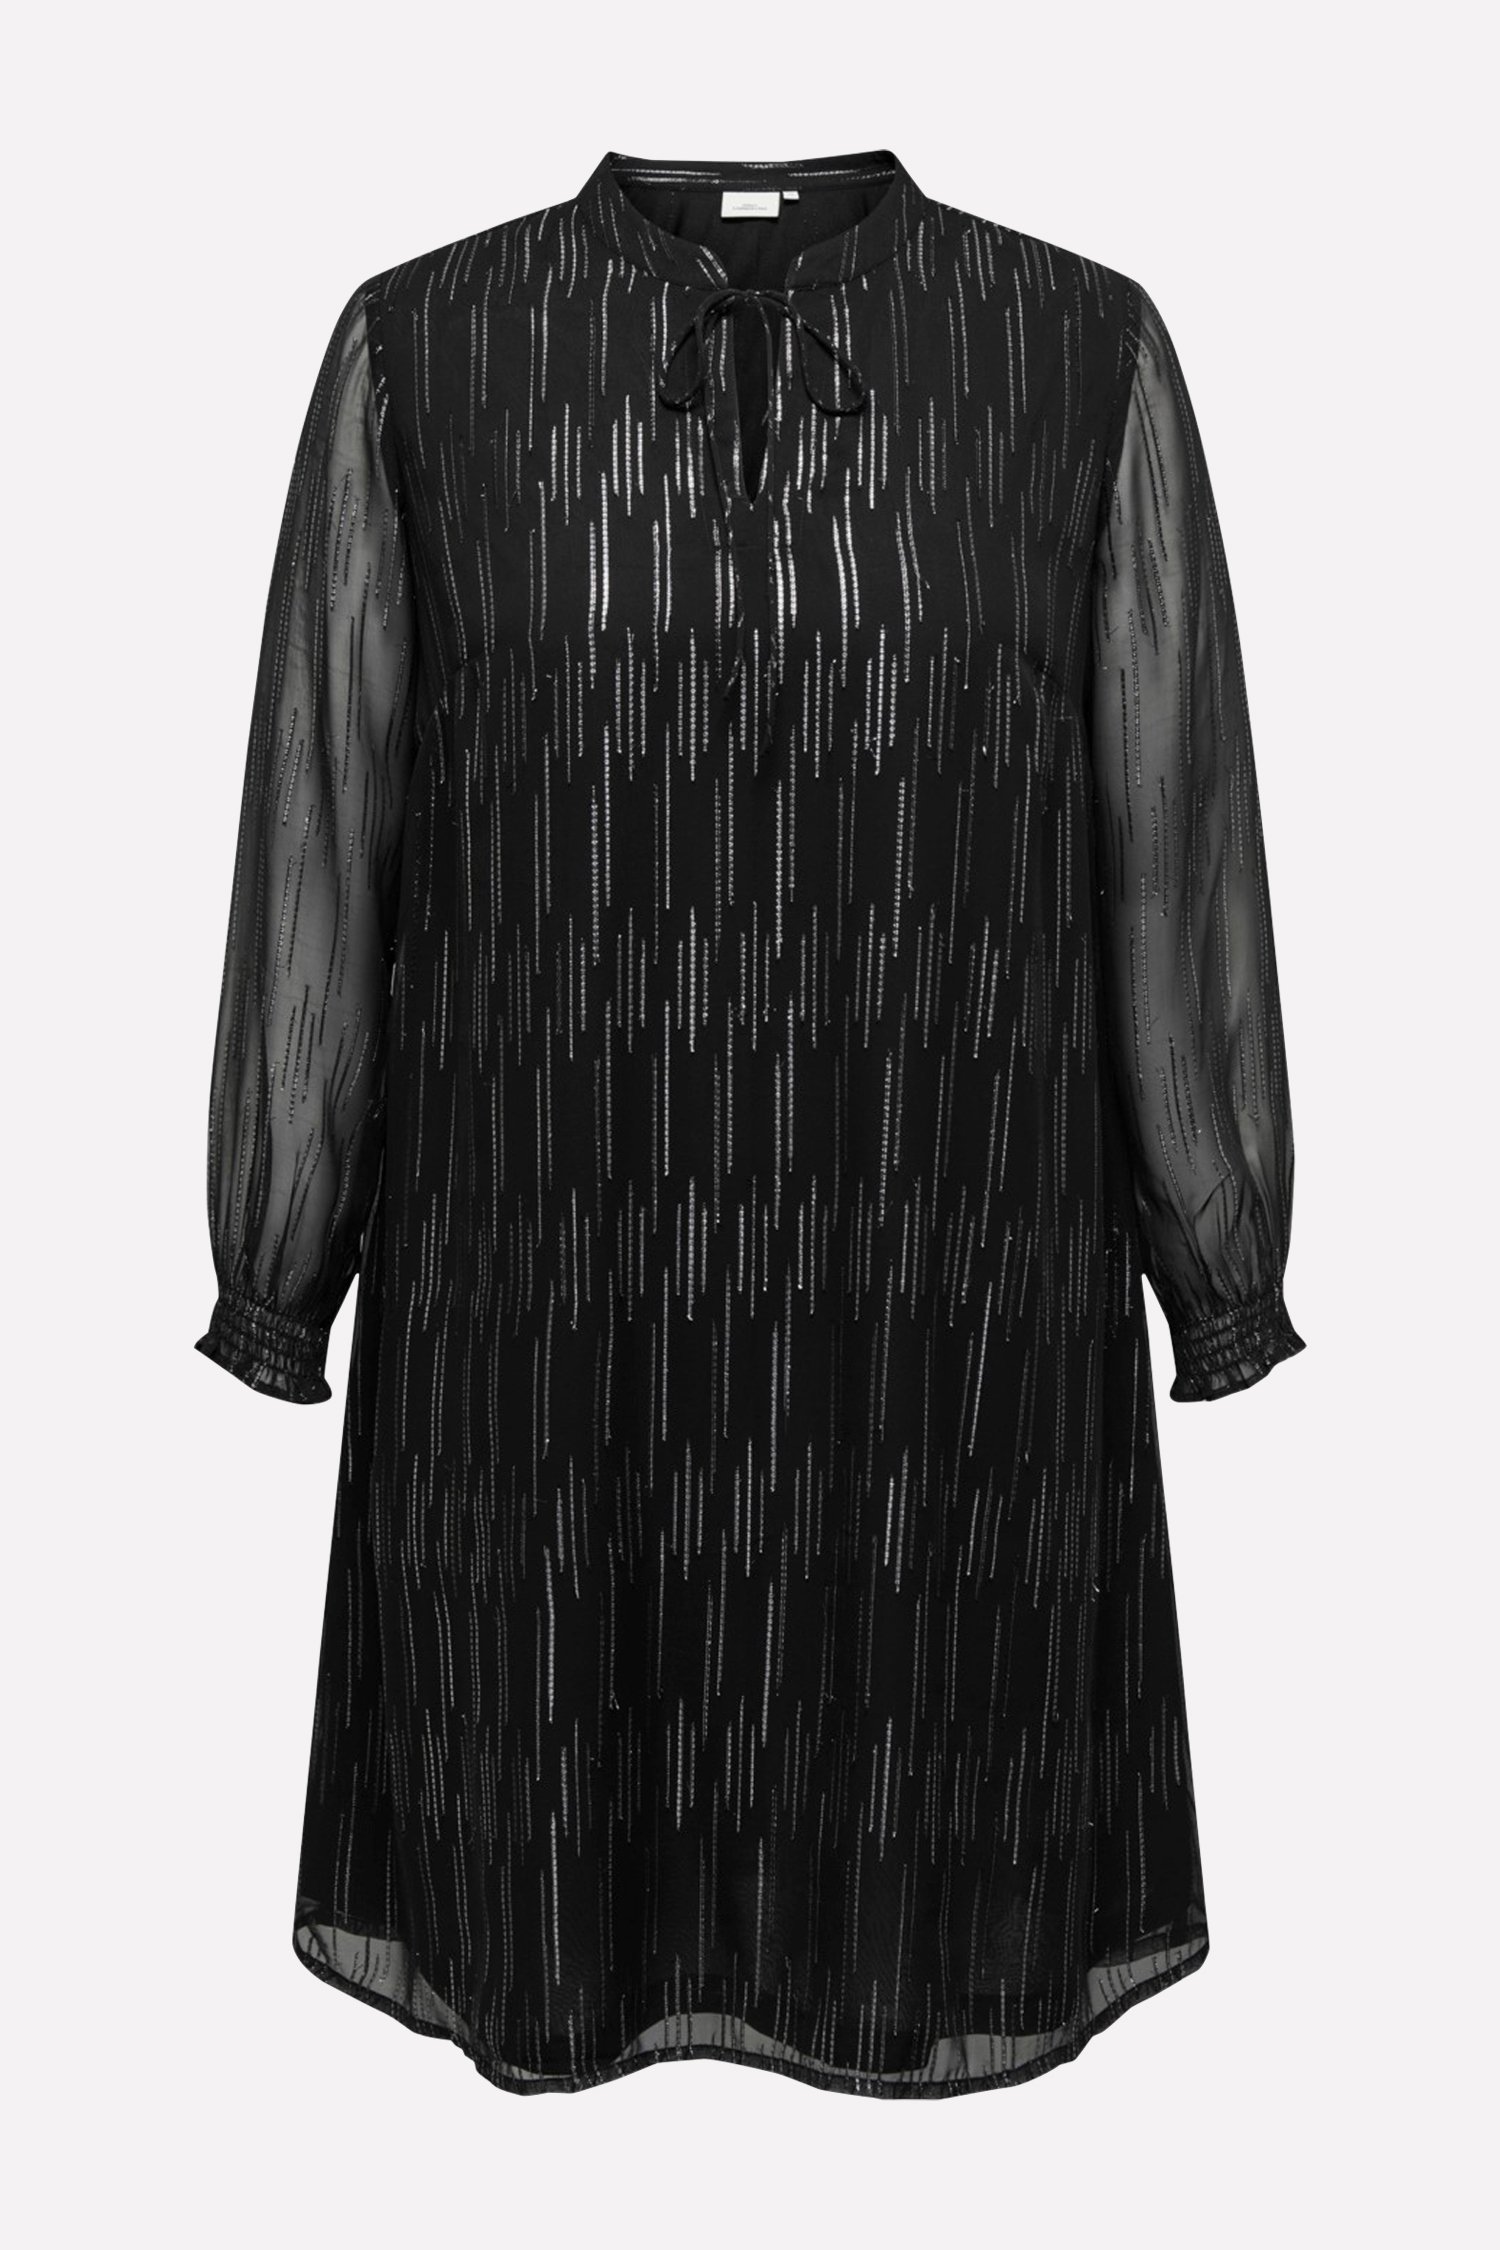 Robe noire avec motif argenté	 de Only Carmakoma pour Femmes